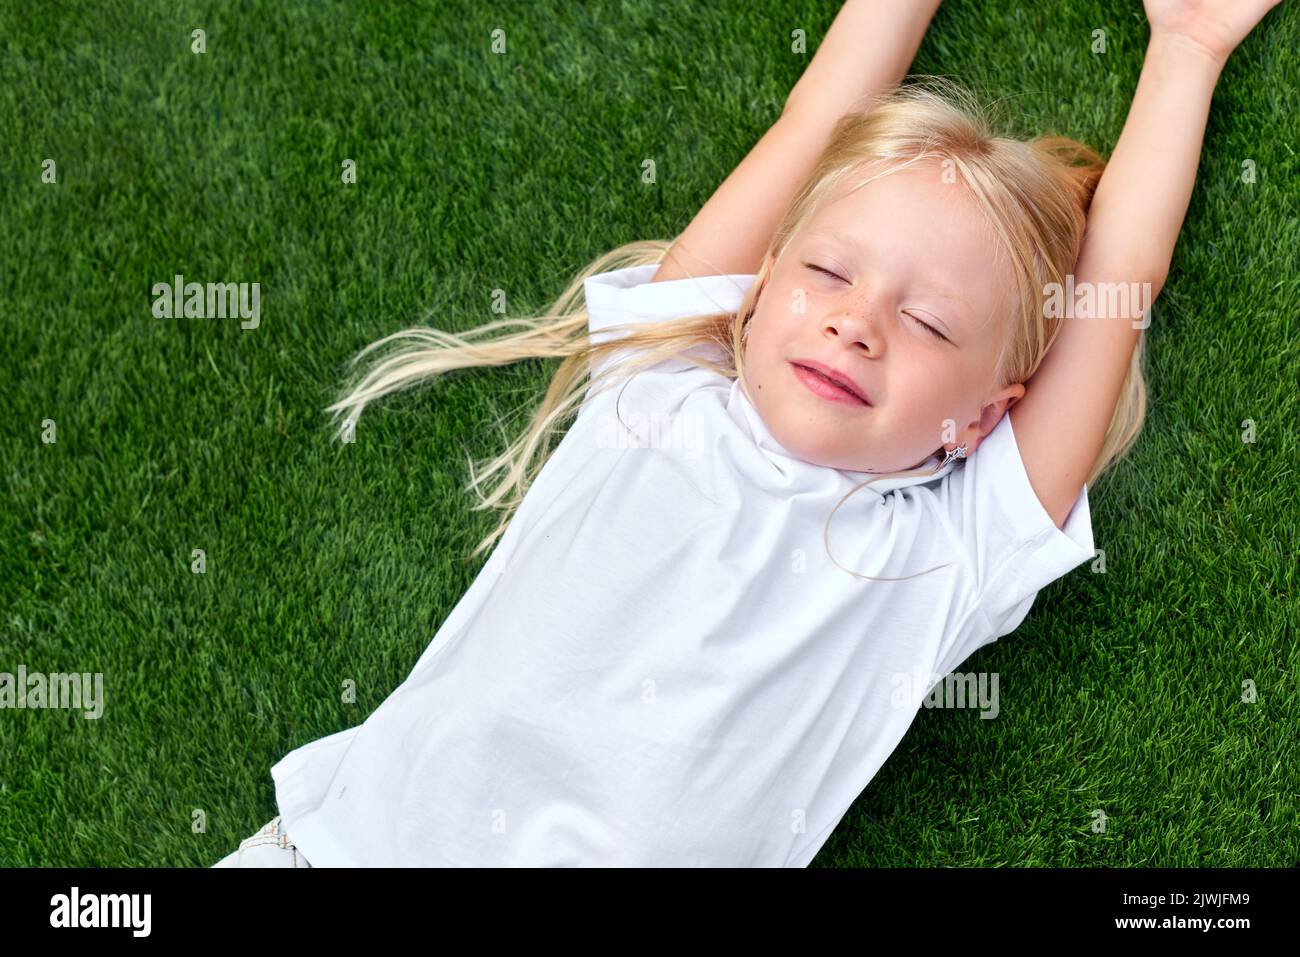 Portrait niedliches blondes Mädchen mit geschlossenen Augen auf grünem Gras liegen. Weißes T-Shirt im Lagenlook. Draufsicht. Stockfoto